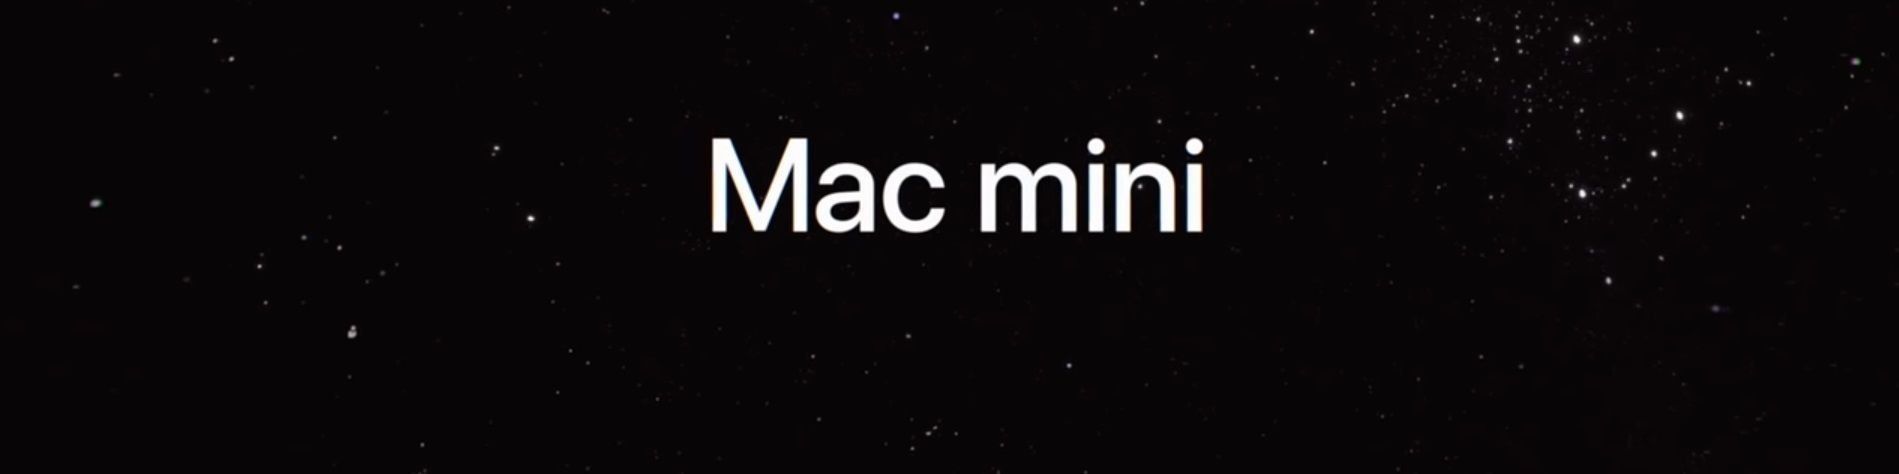 Apple Mac mini 2018 - klady a zápory